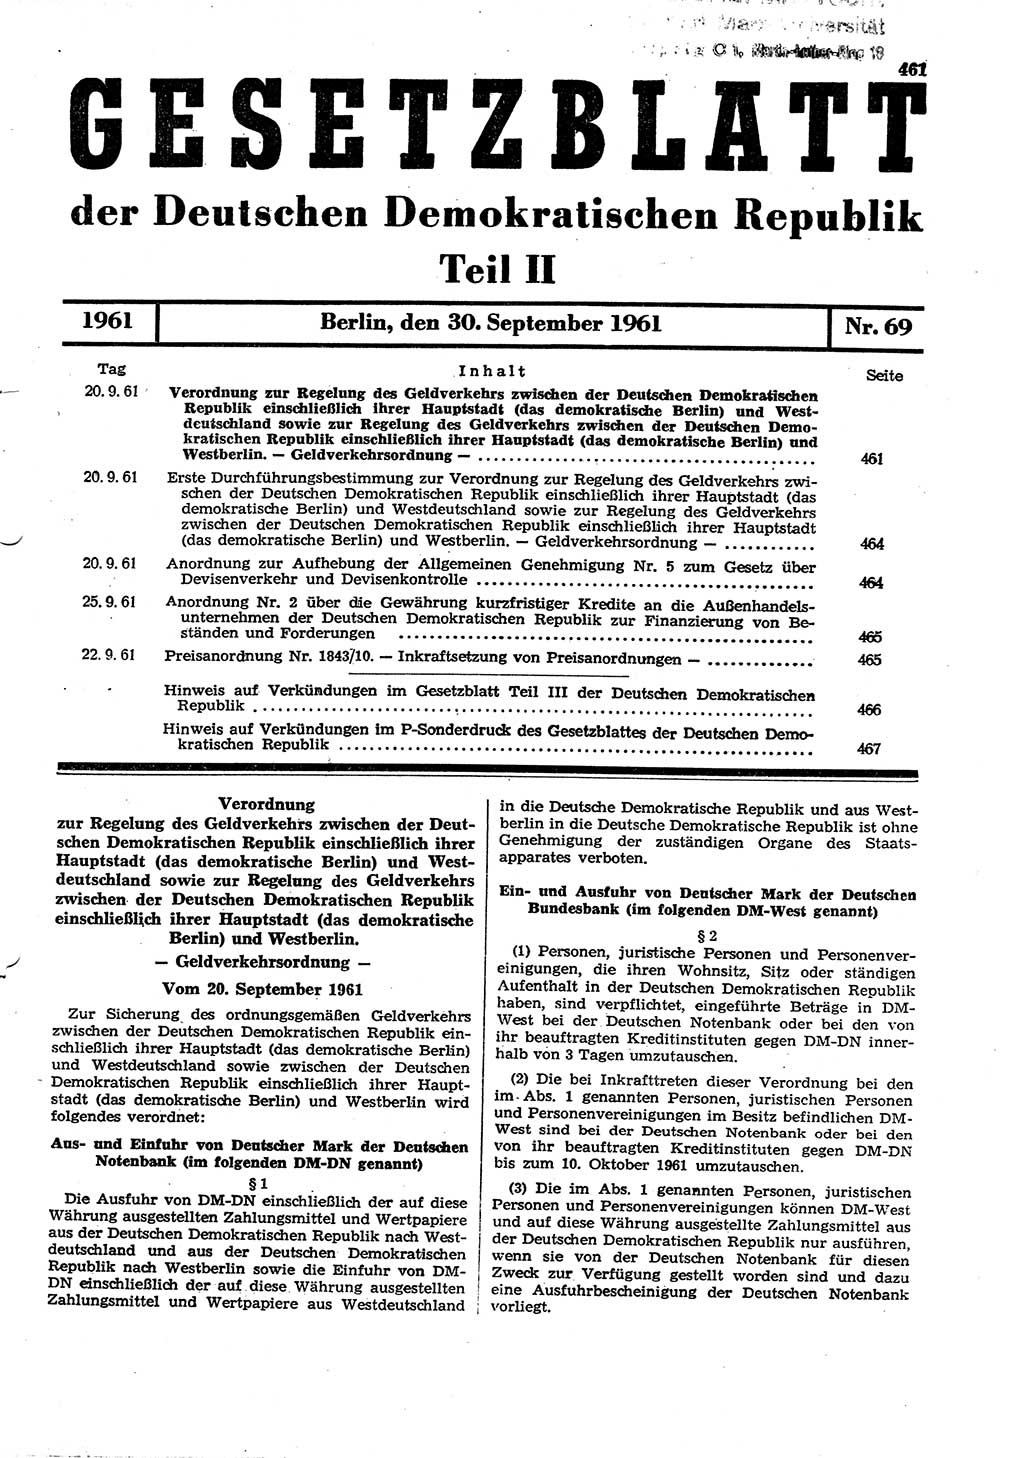 Gesetzblatt (GBl.) der Deutschen Demokratischen Republik (DDR) Teil ⅠⅠ 1961, Seite 461 (GBl. DDR ⅠⅠ 1961, S. 461)